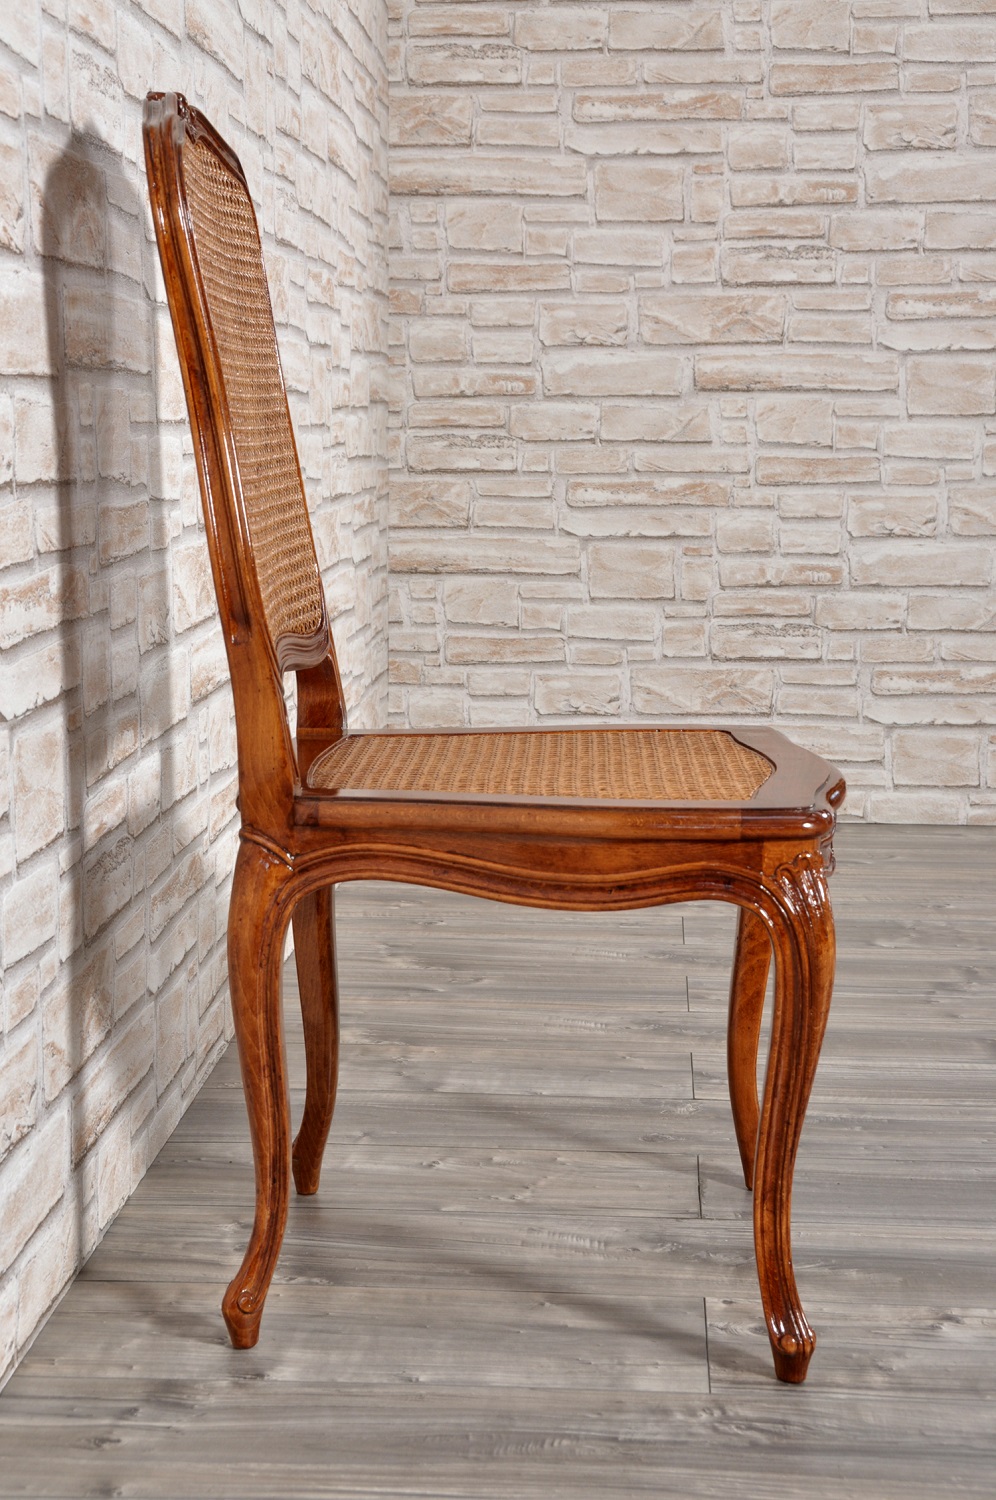 raffinata sedia veneziana intagliata a mano nello stile Luigi XV settecento per arredamenti di lusso in stile classico